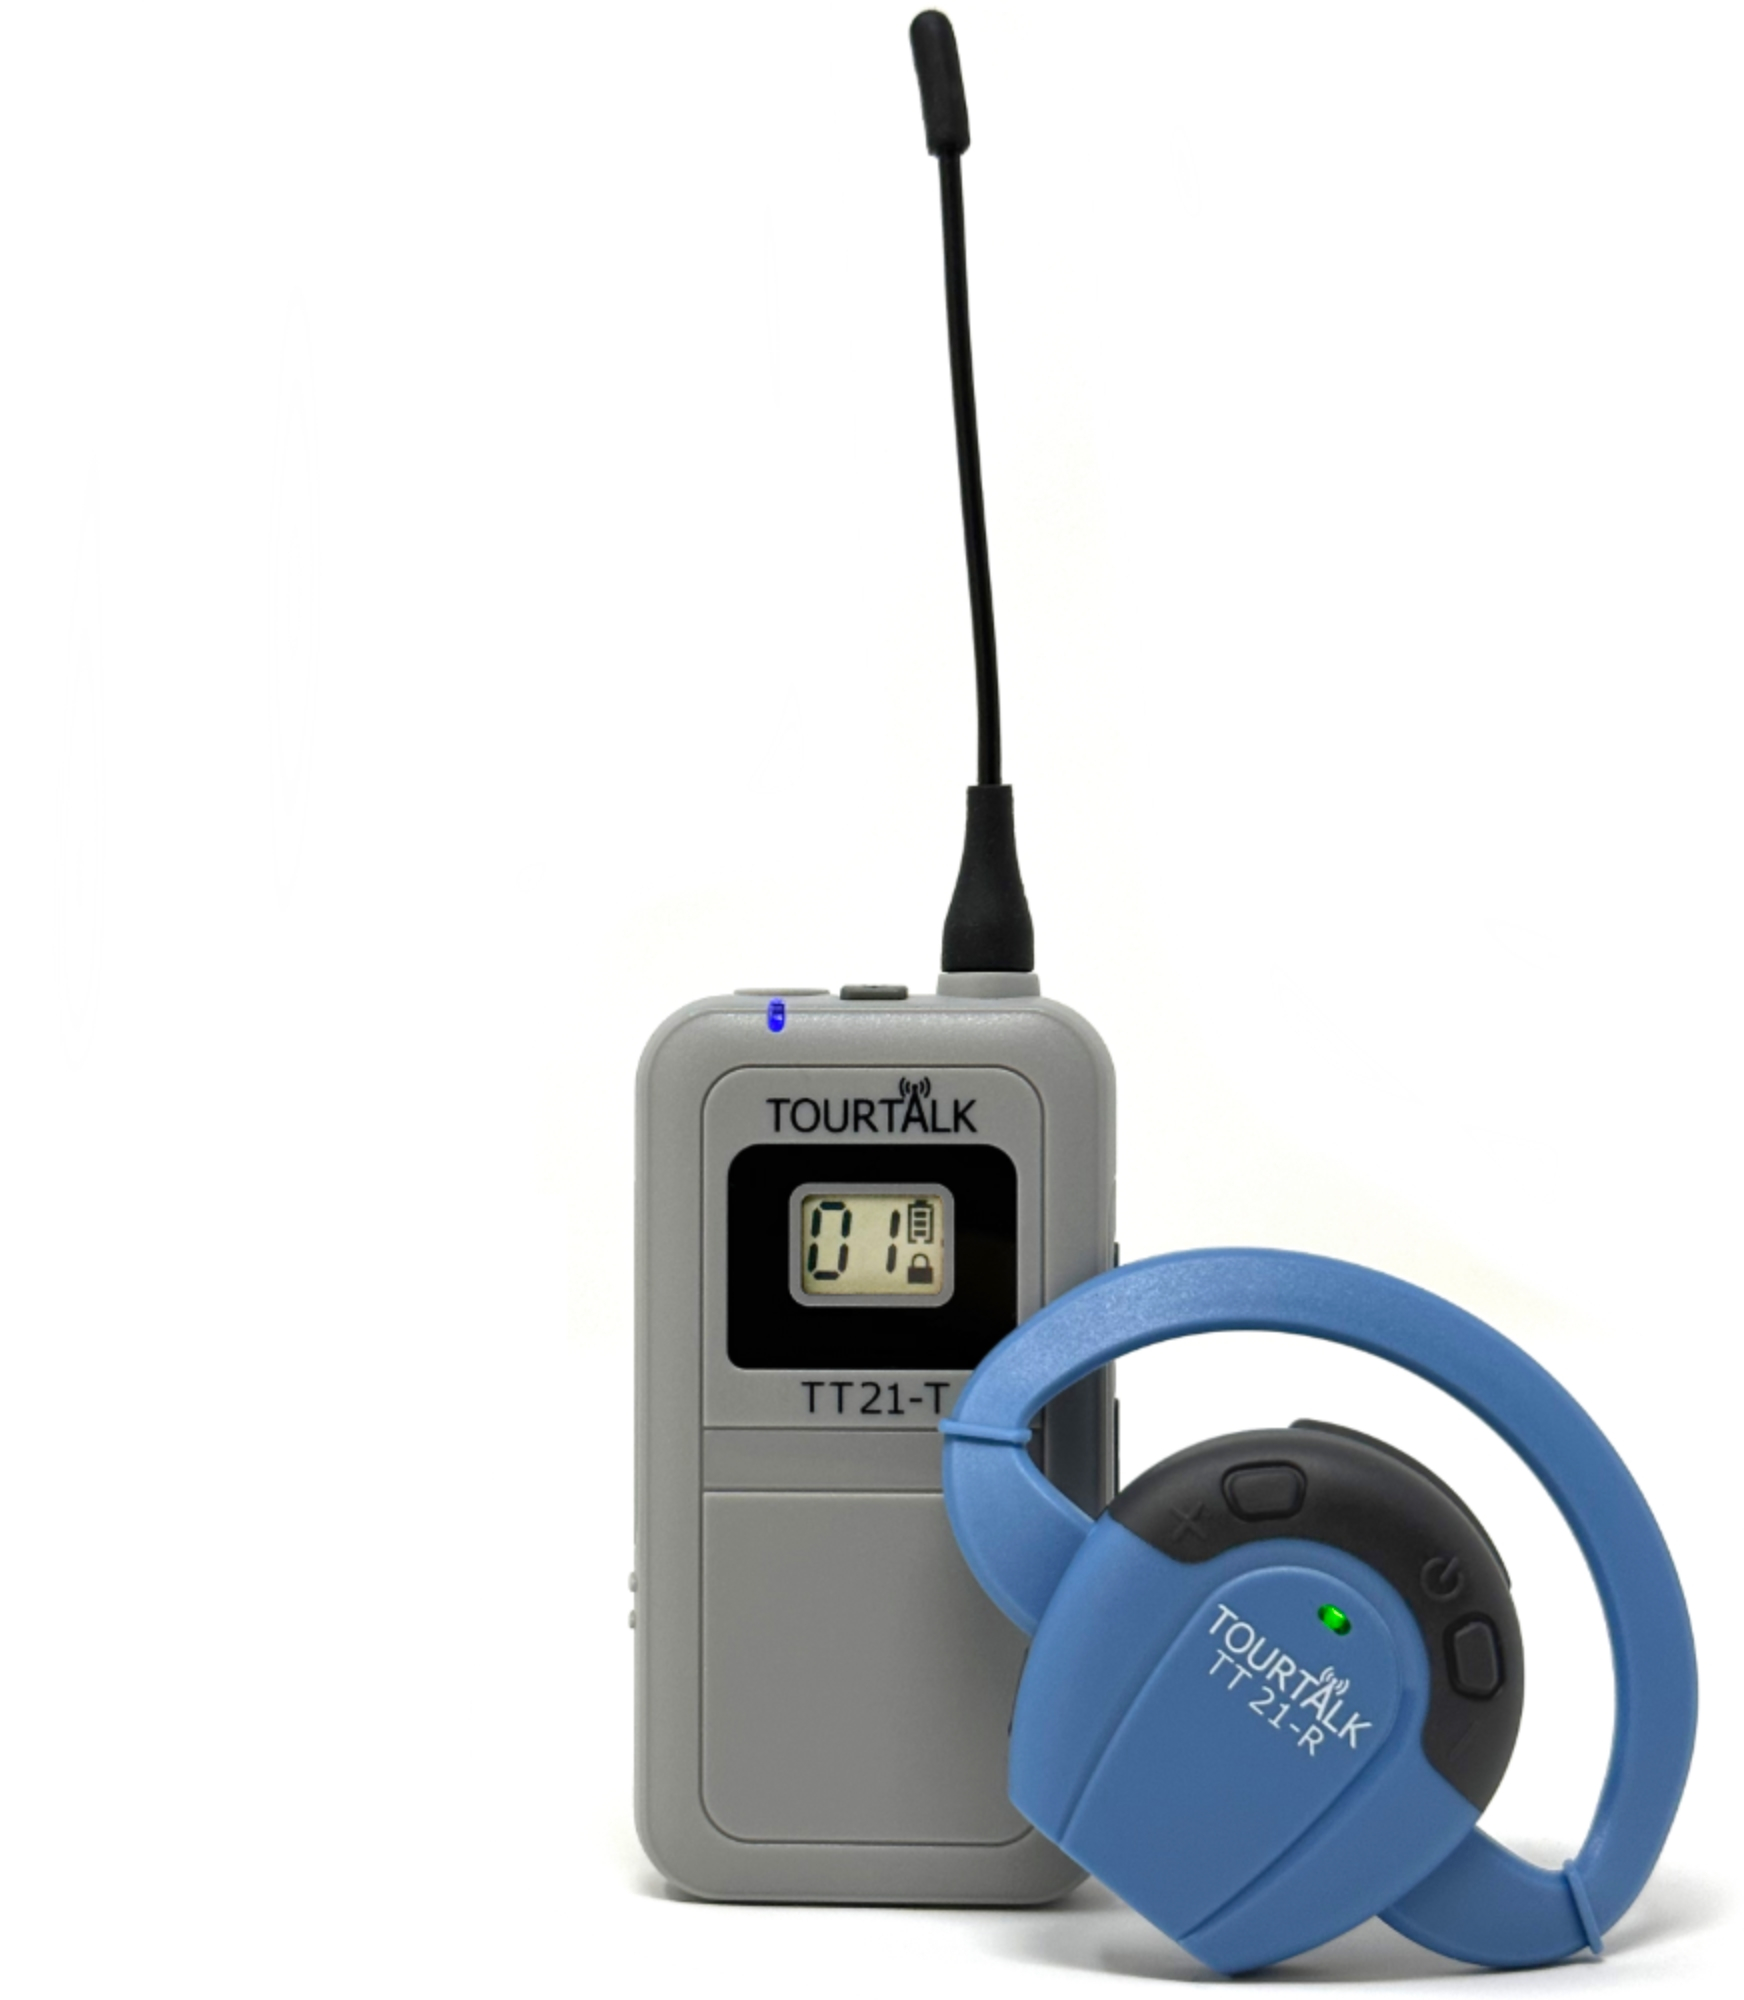 Tourtalk TT 21-T bodypack transmitter and TT 21-R earphone receiver